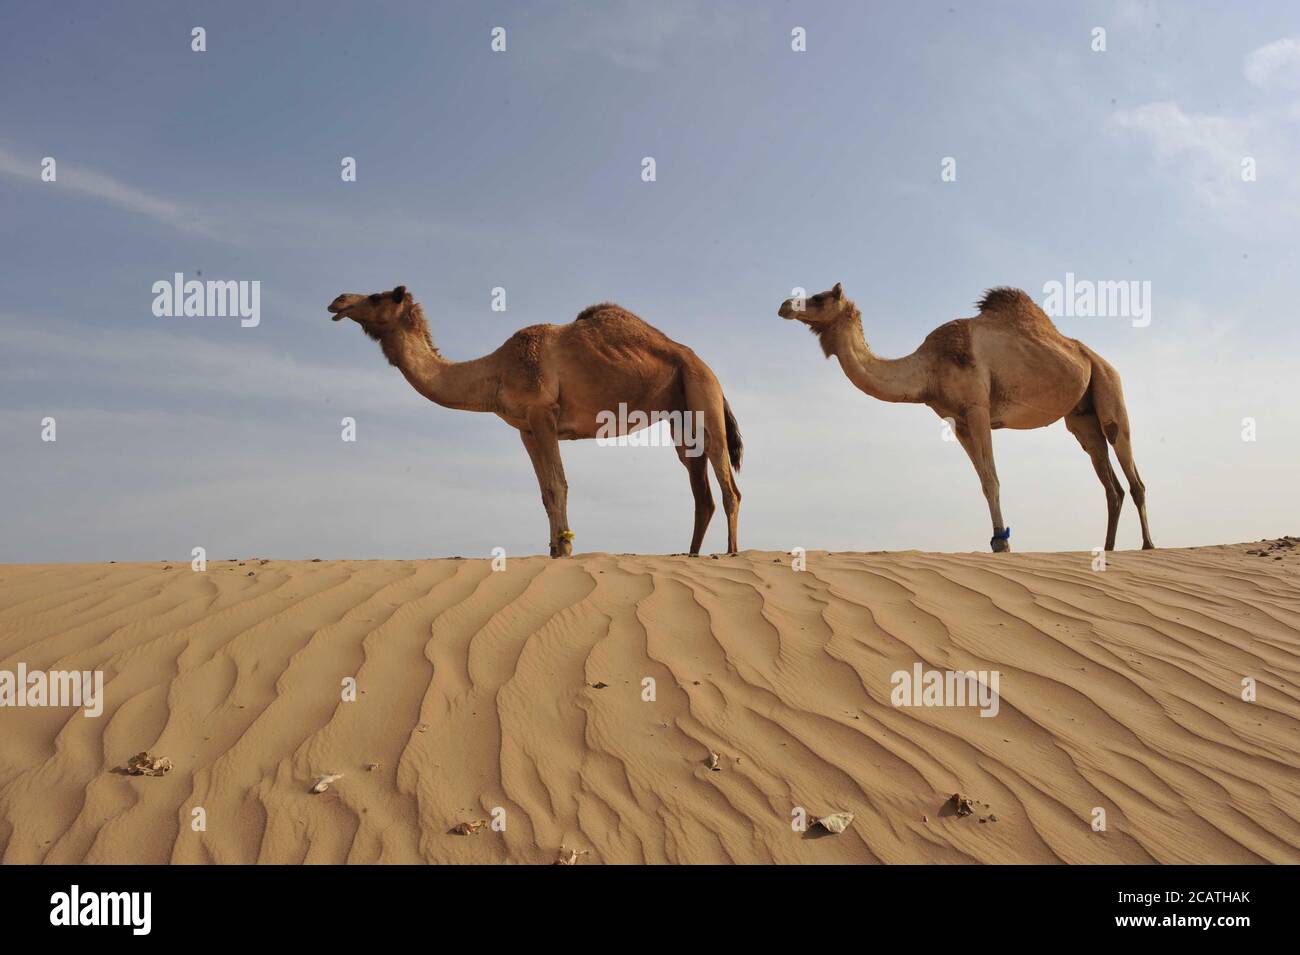 Arabian deux chameaux debout dans une rangée, Jaisalmer, Rajasthan, Inde, photo de stock haute résolution. Banque D'Images